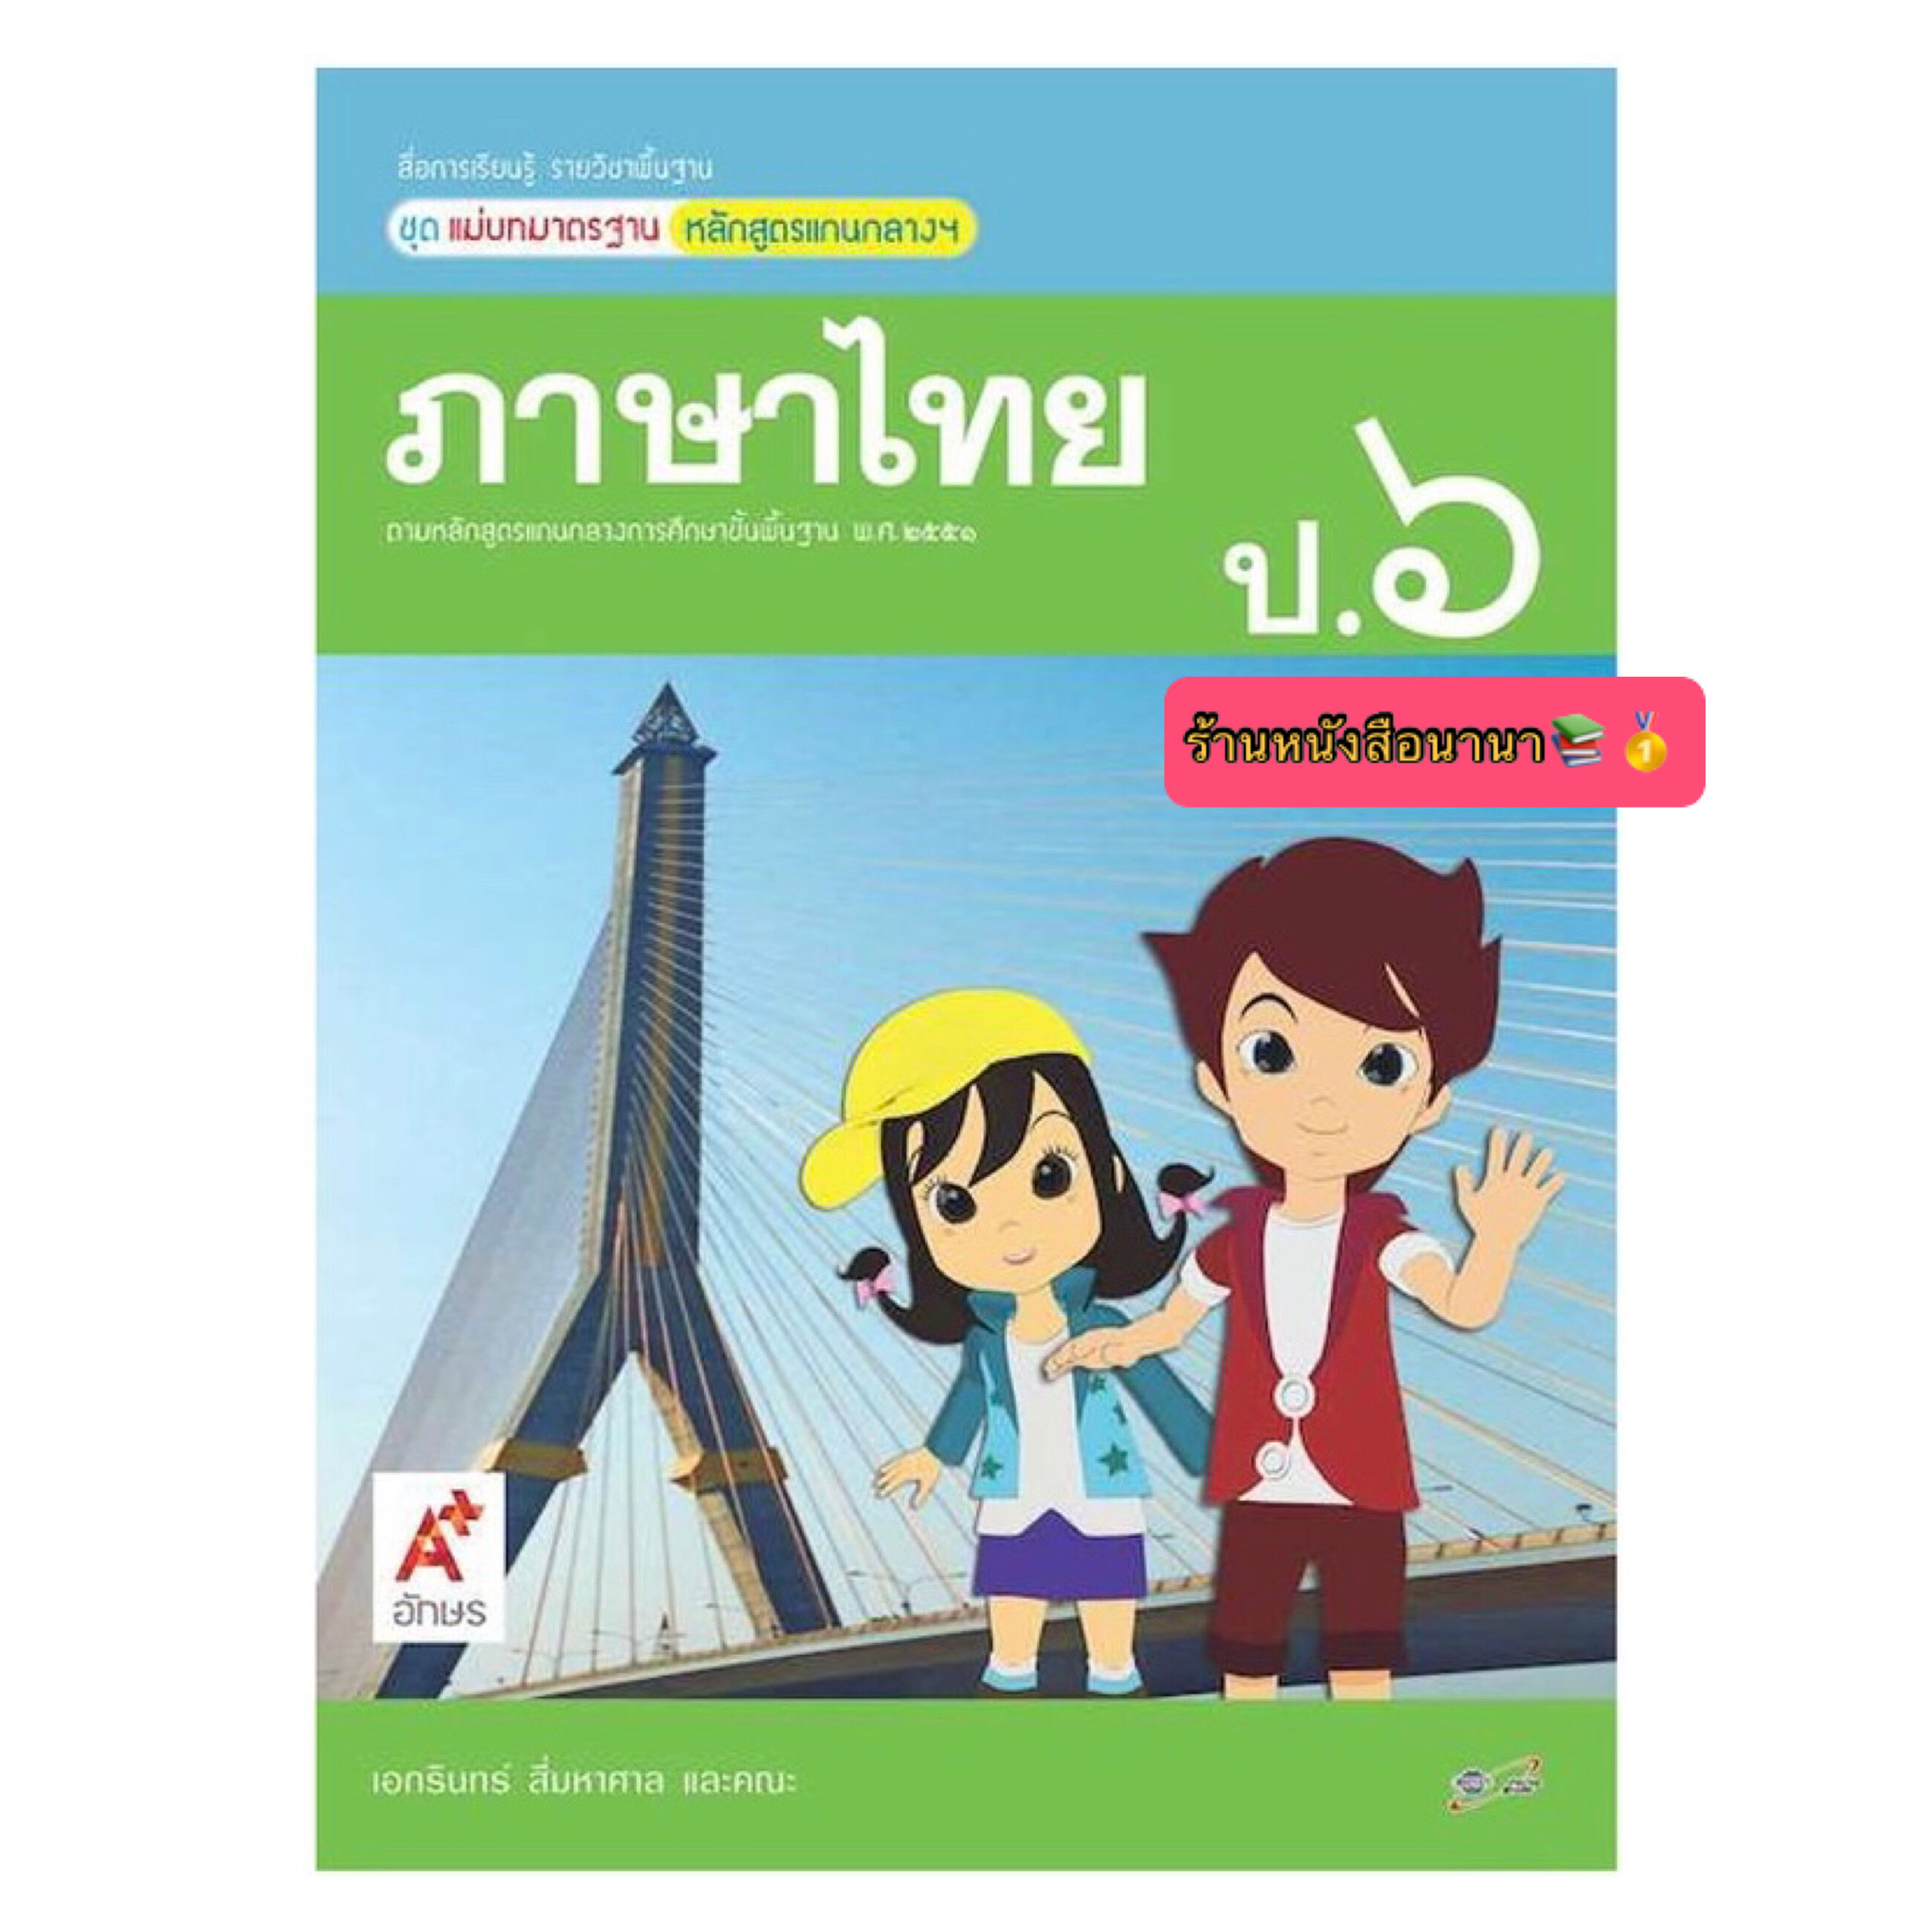 หนังสือเรียน สื่อแม่บทมาตรฐาน (มมฐ.) ภาษาไทย ป.6 (อจท.) ฉบับปรับปรุงล่าสุด หนังสือที่มีเนื้อหาและแบบฝึกหัดในเล่มเดียว เรียนเข้าใจง่าย